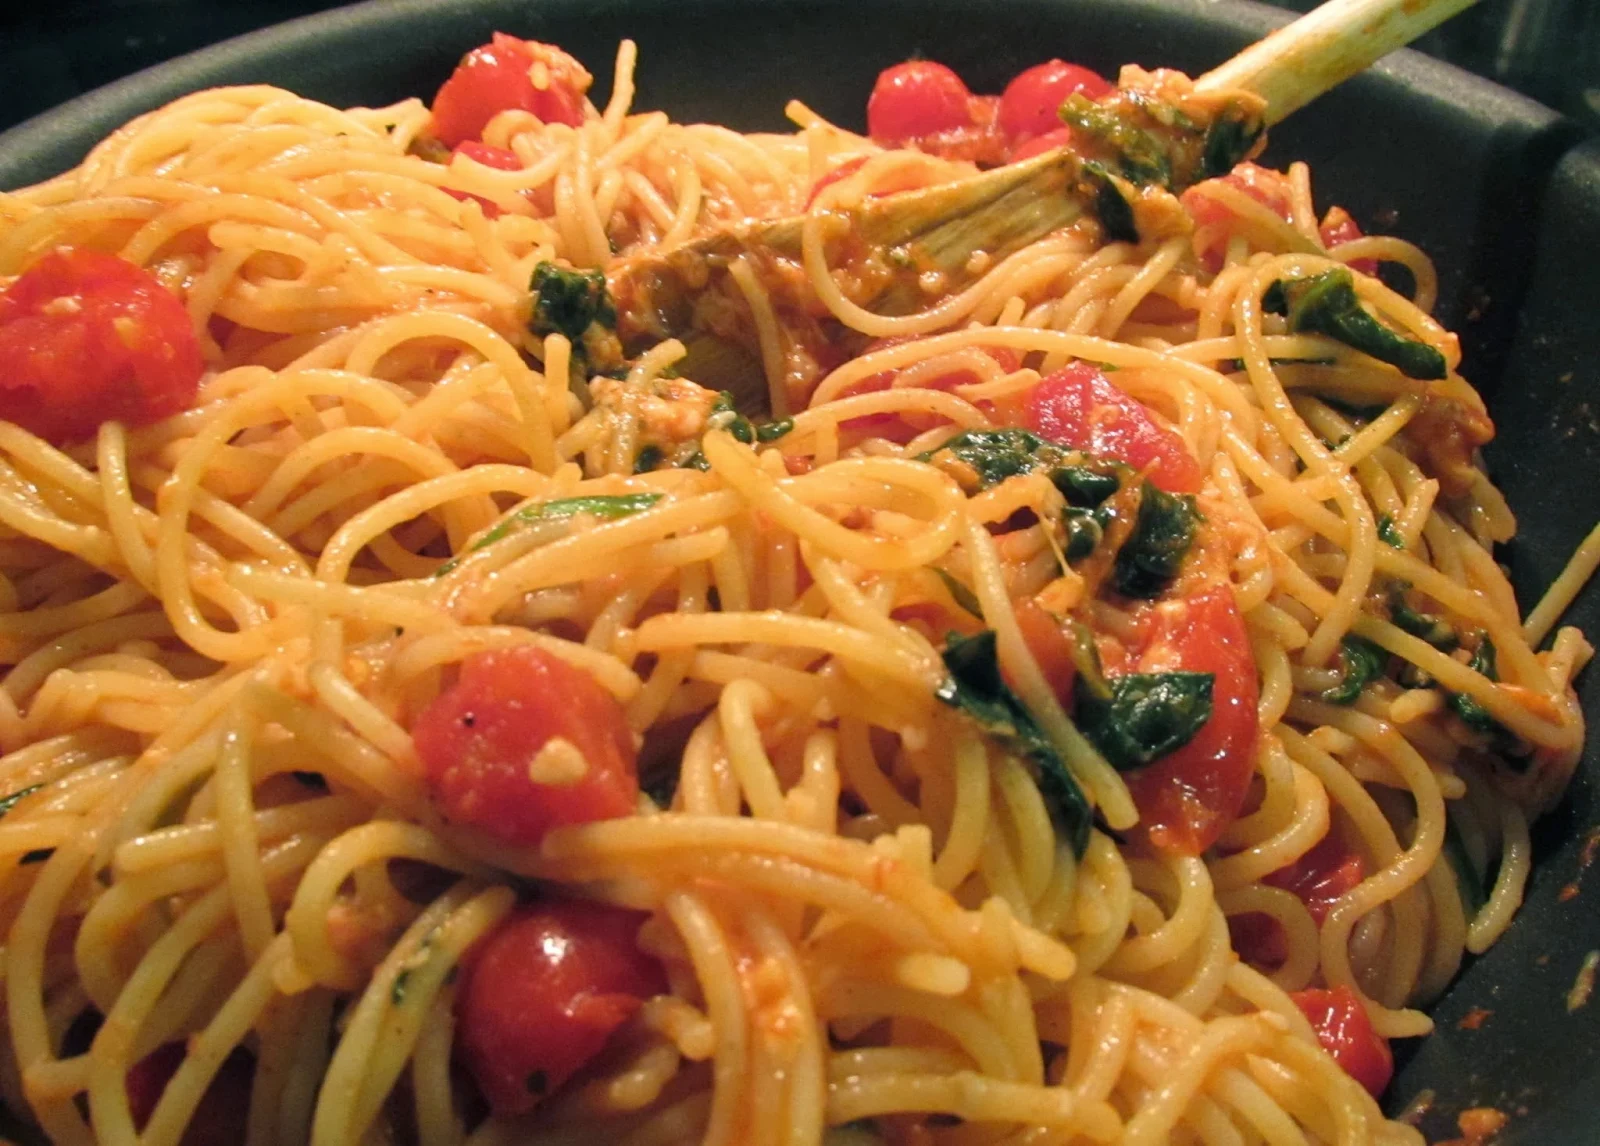 Successfully Gluten Free! : Spinach & Grape Tomato Pasta